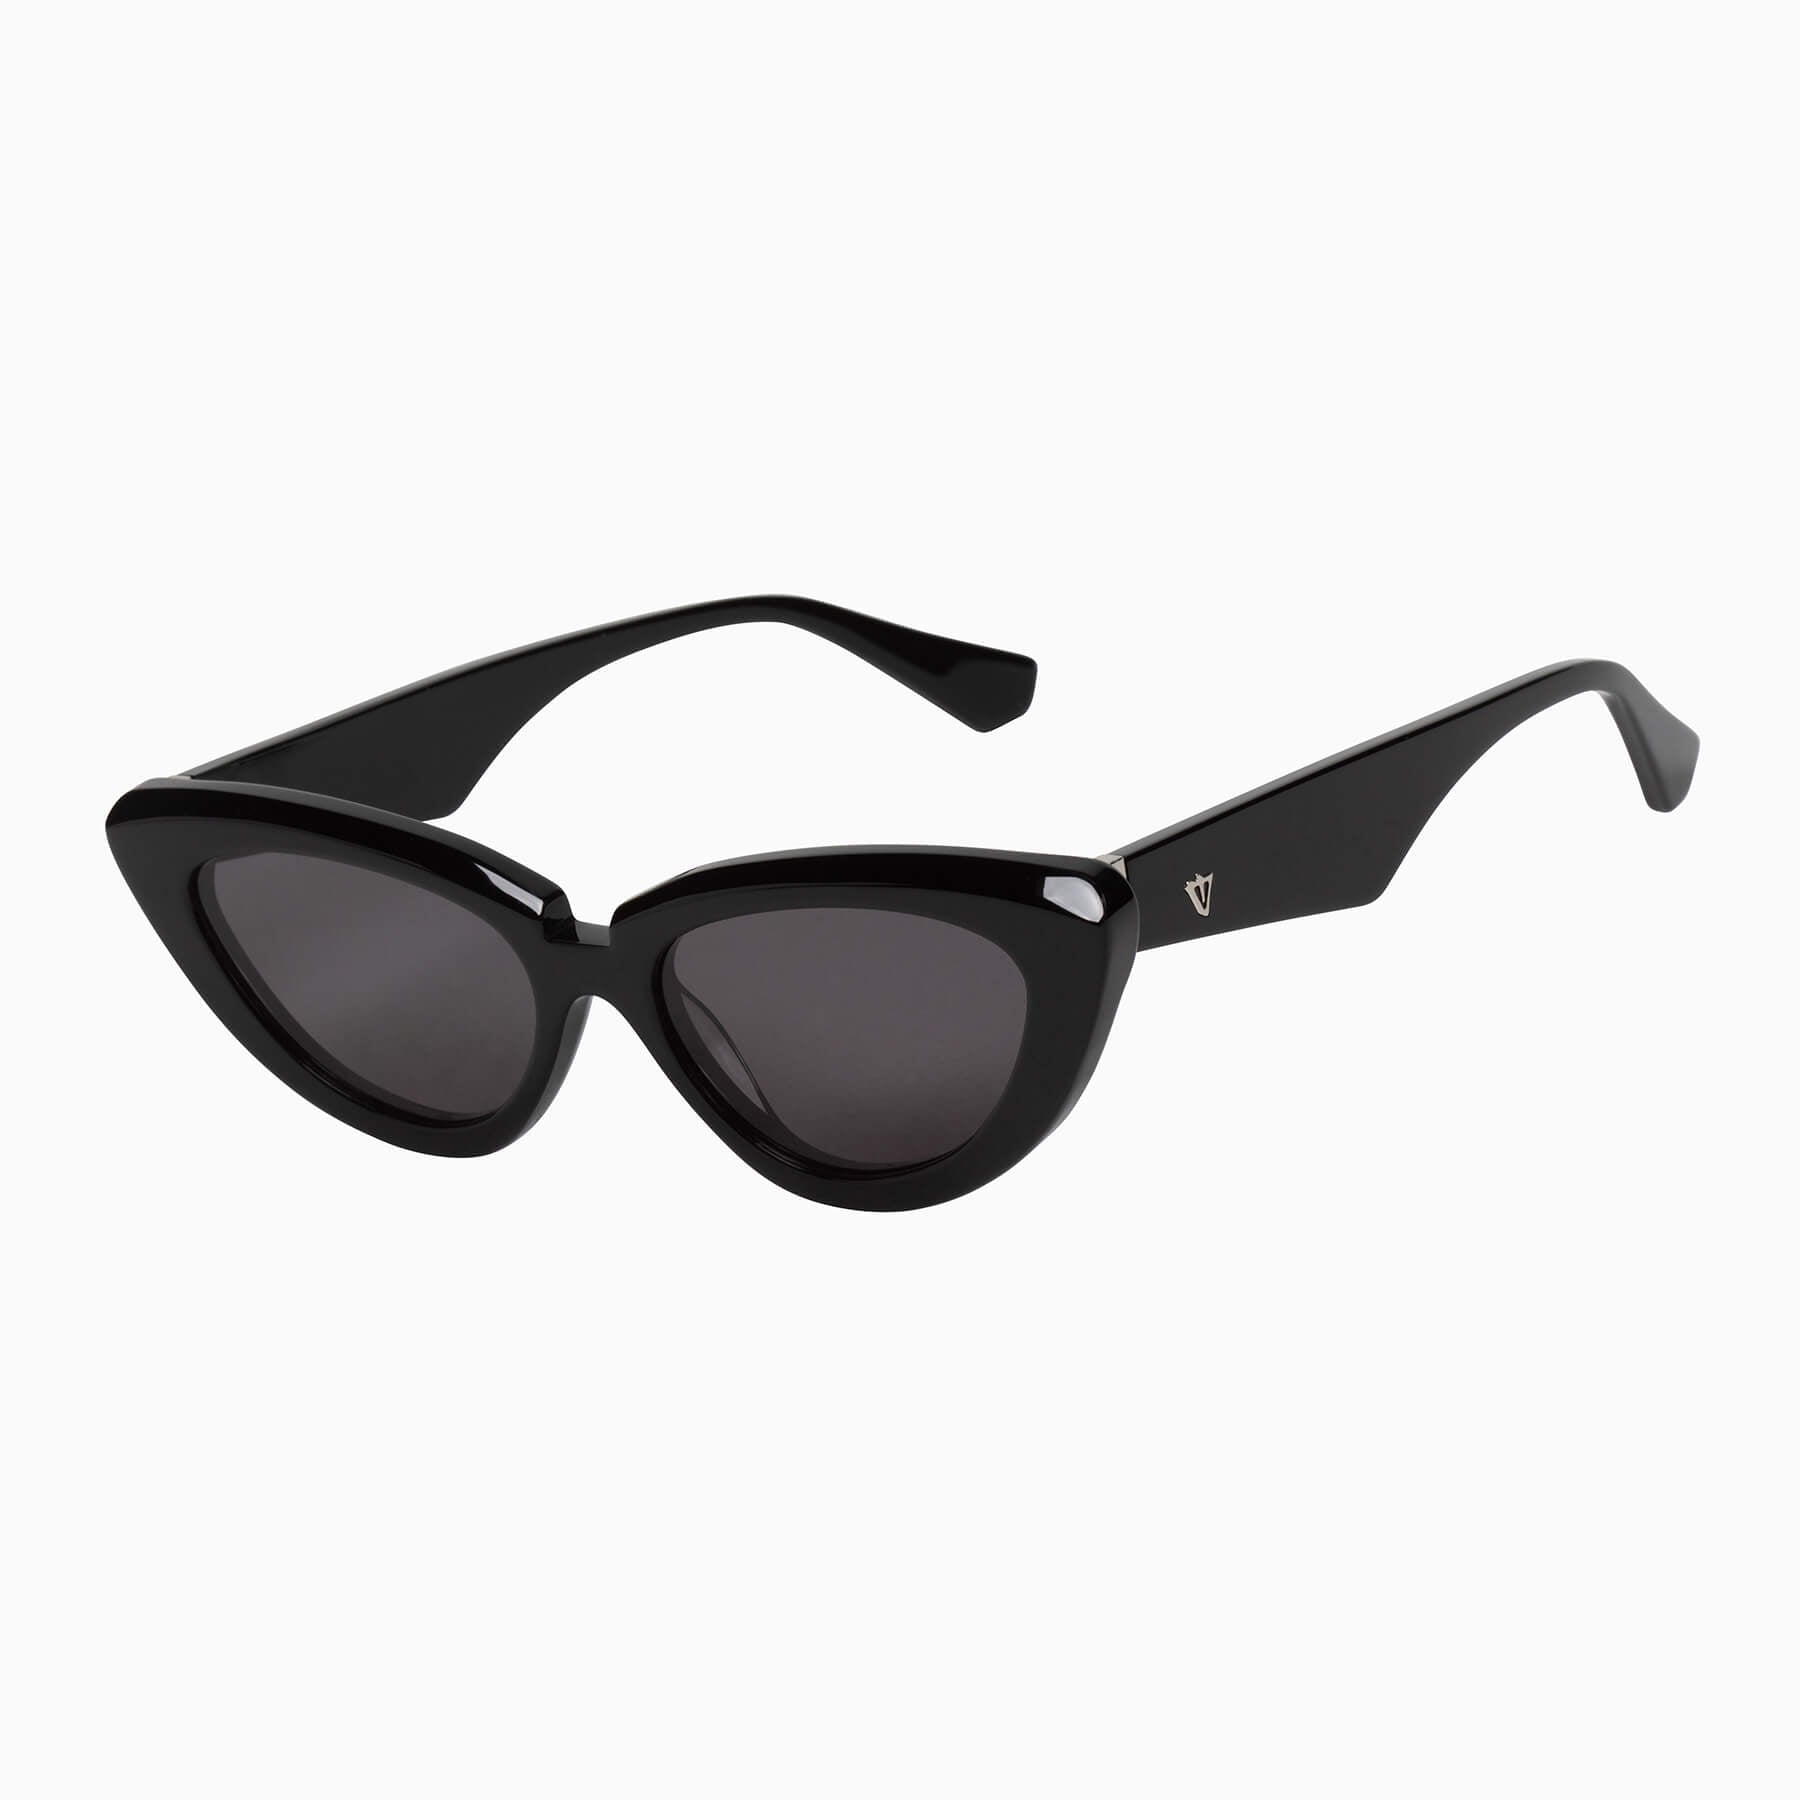 Dayze | Sunglasses - Gloss Black w. Silver Metal Trim / Black Lens